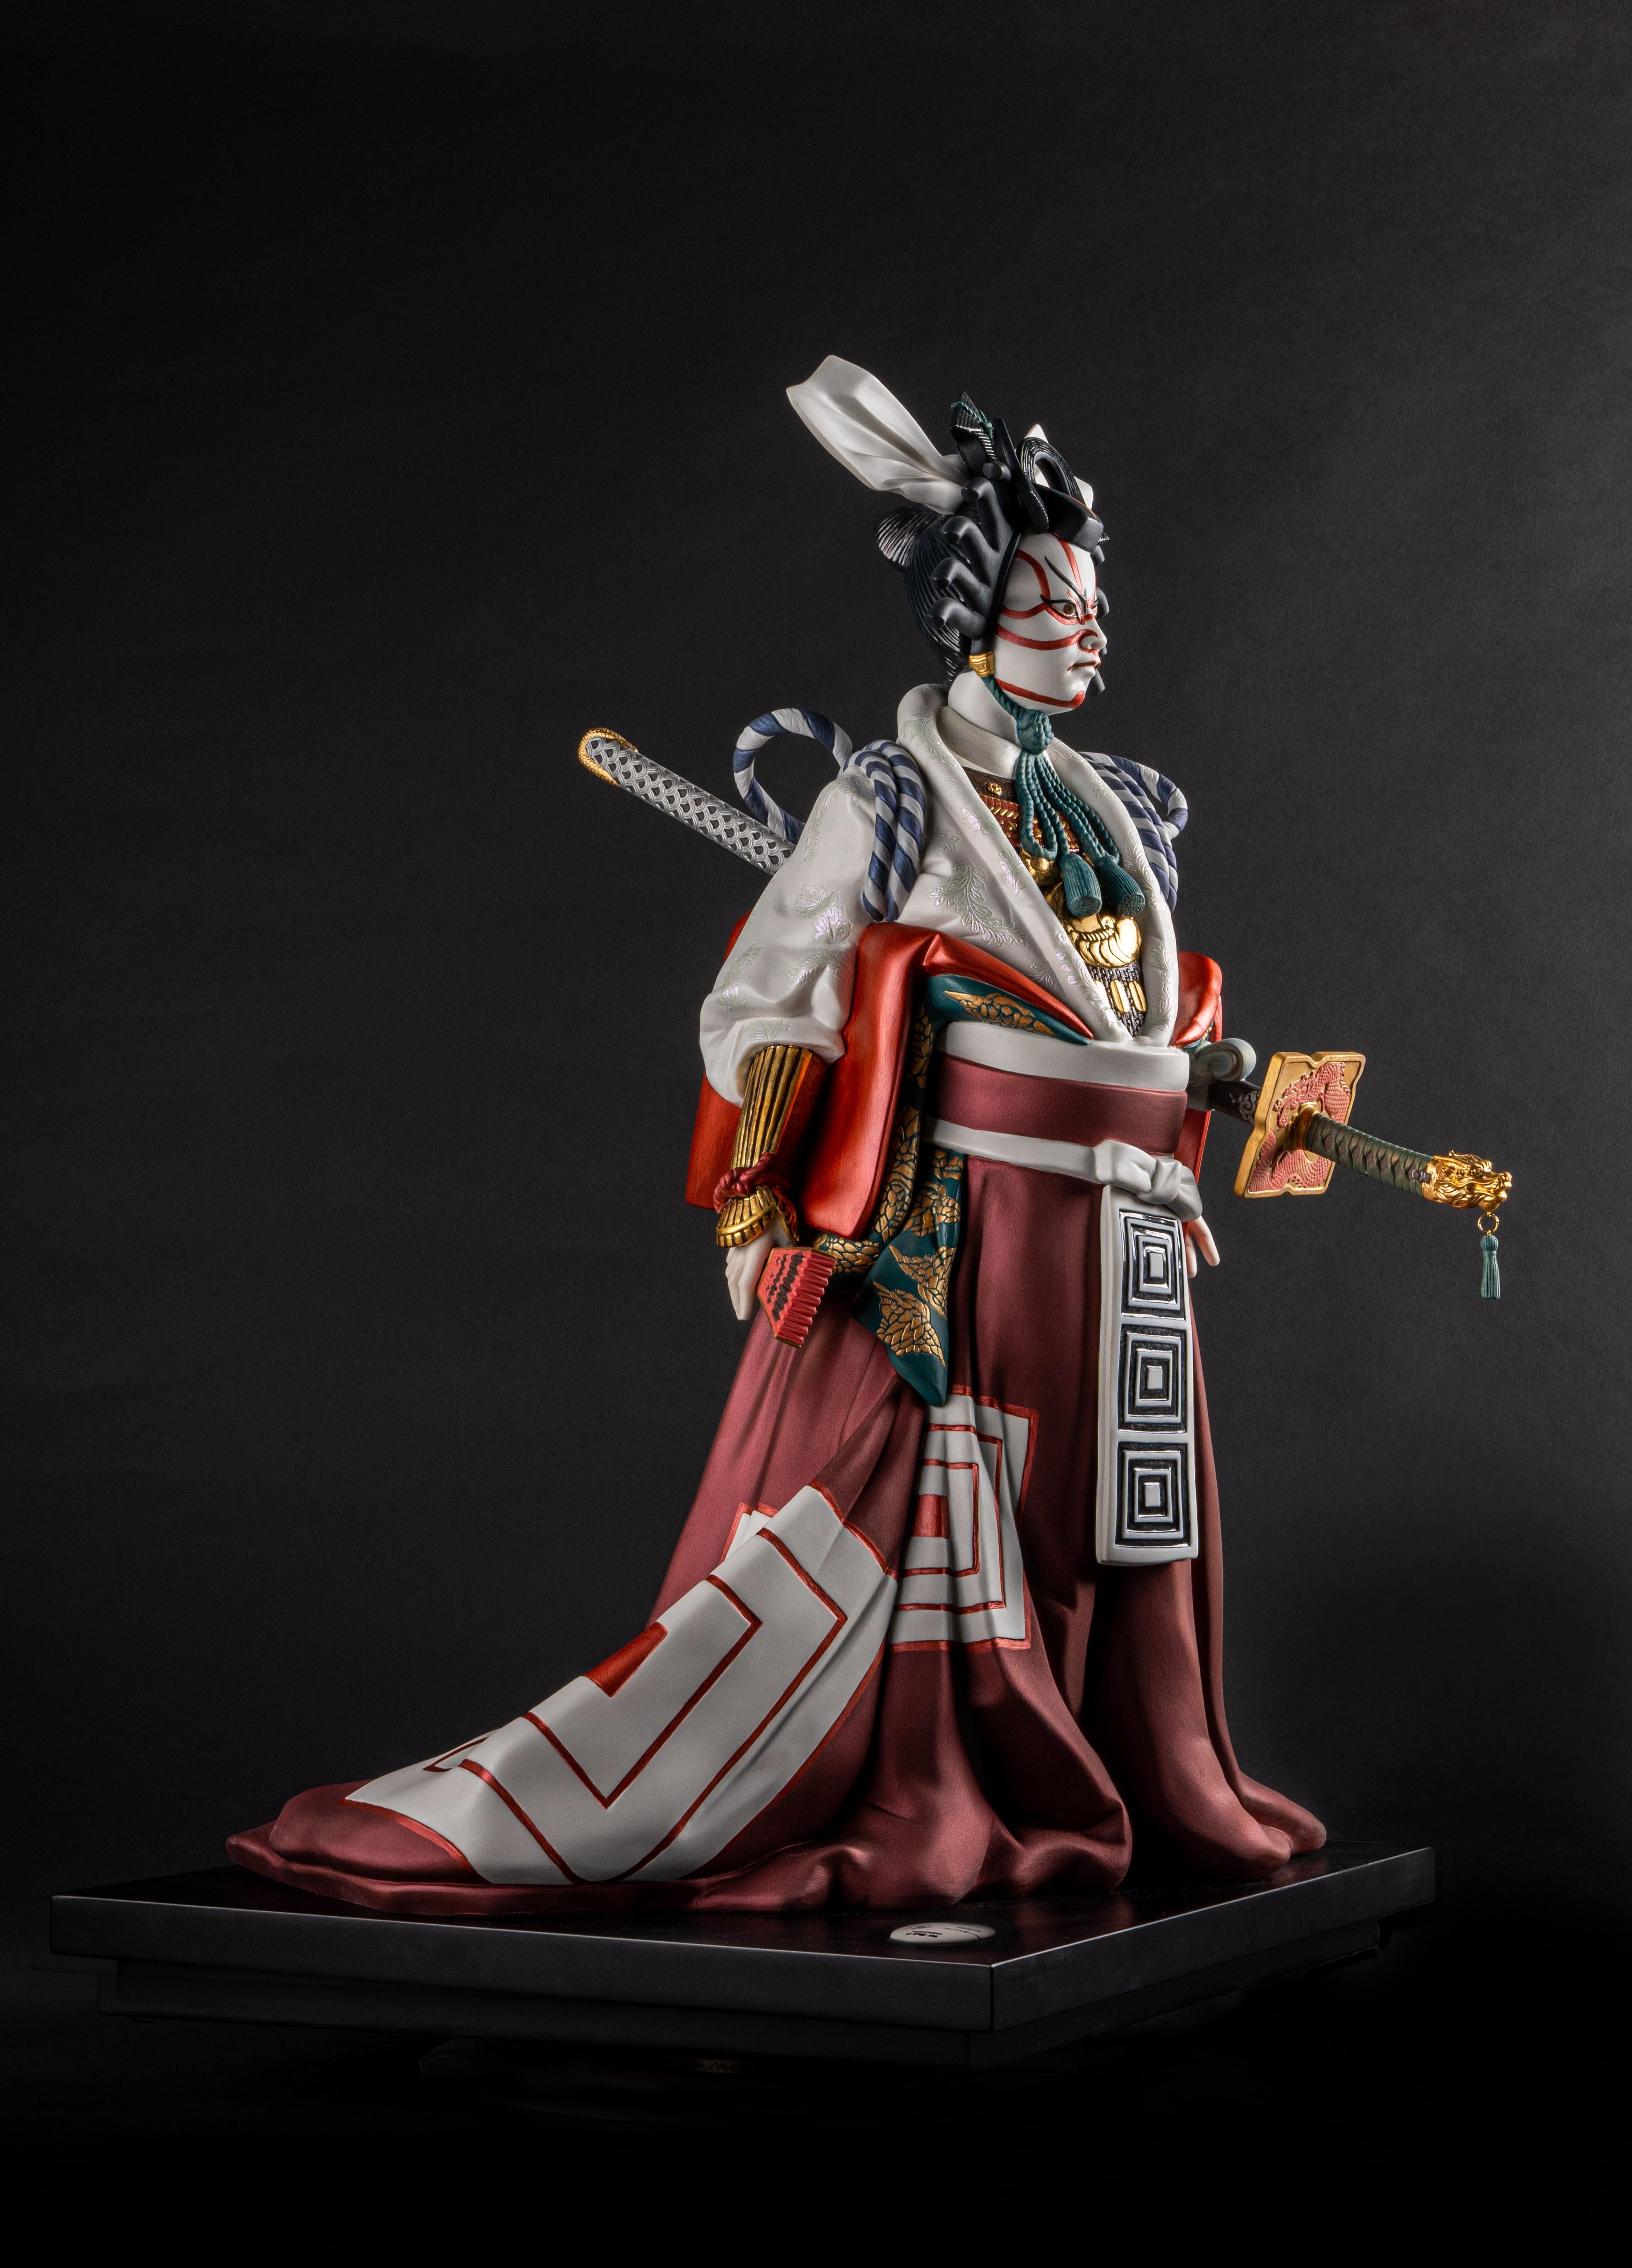 Die Skulptur aus High Porcelain in limitierter Auflage stellt einen Kabuki-Schauspieler dar, eine der beliebtesten Formen des japanischen Theaters. Diese kraftvolle Figur in einem spektakulären Kostüm ist eine auf 250 Exemplare limitierte Auflage